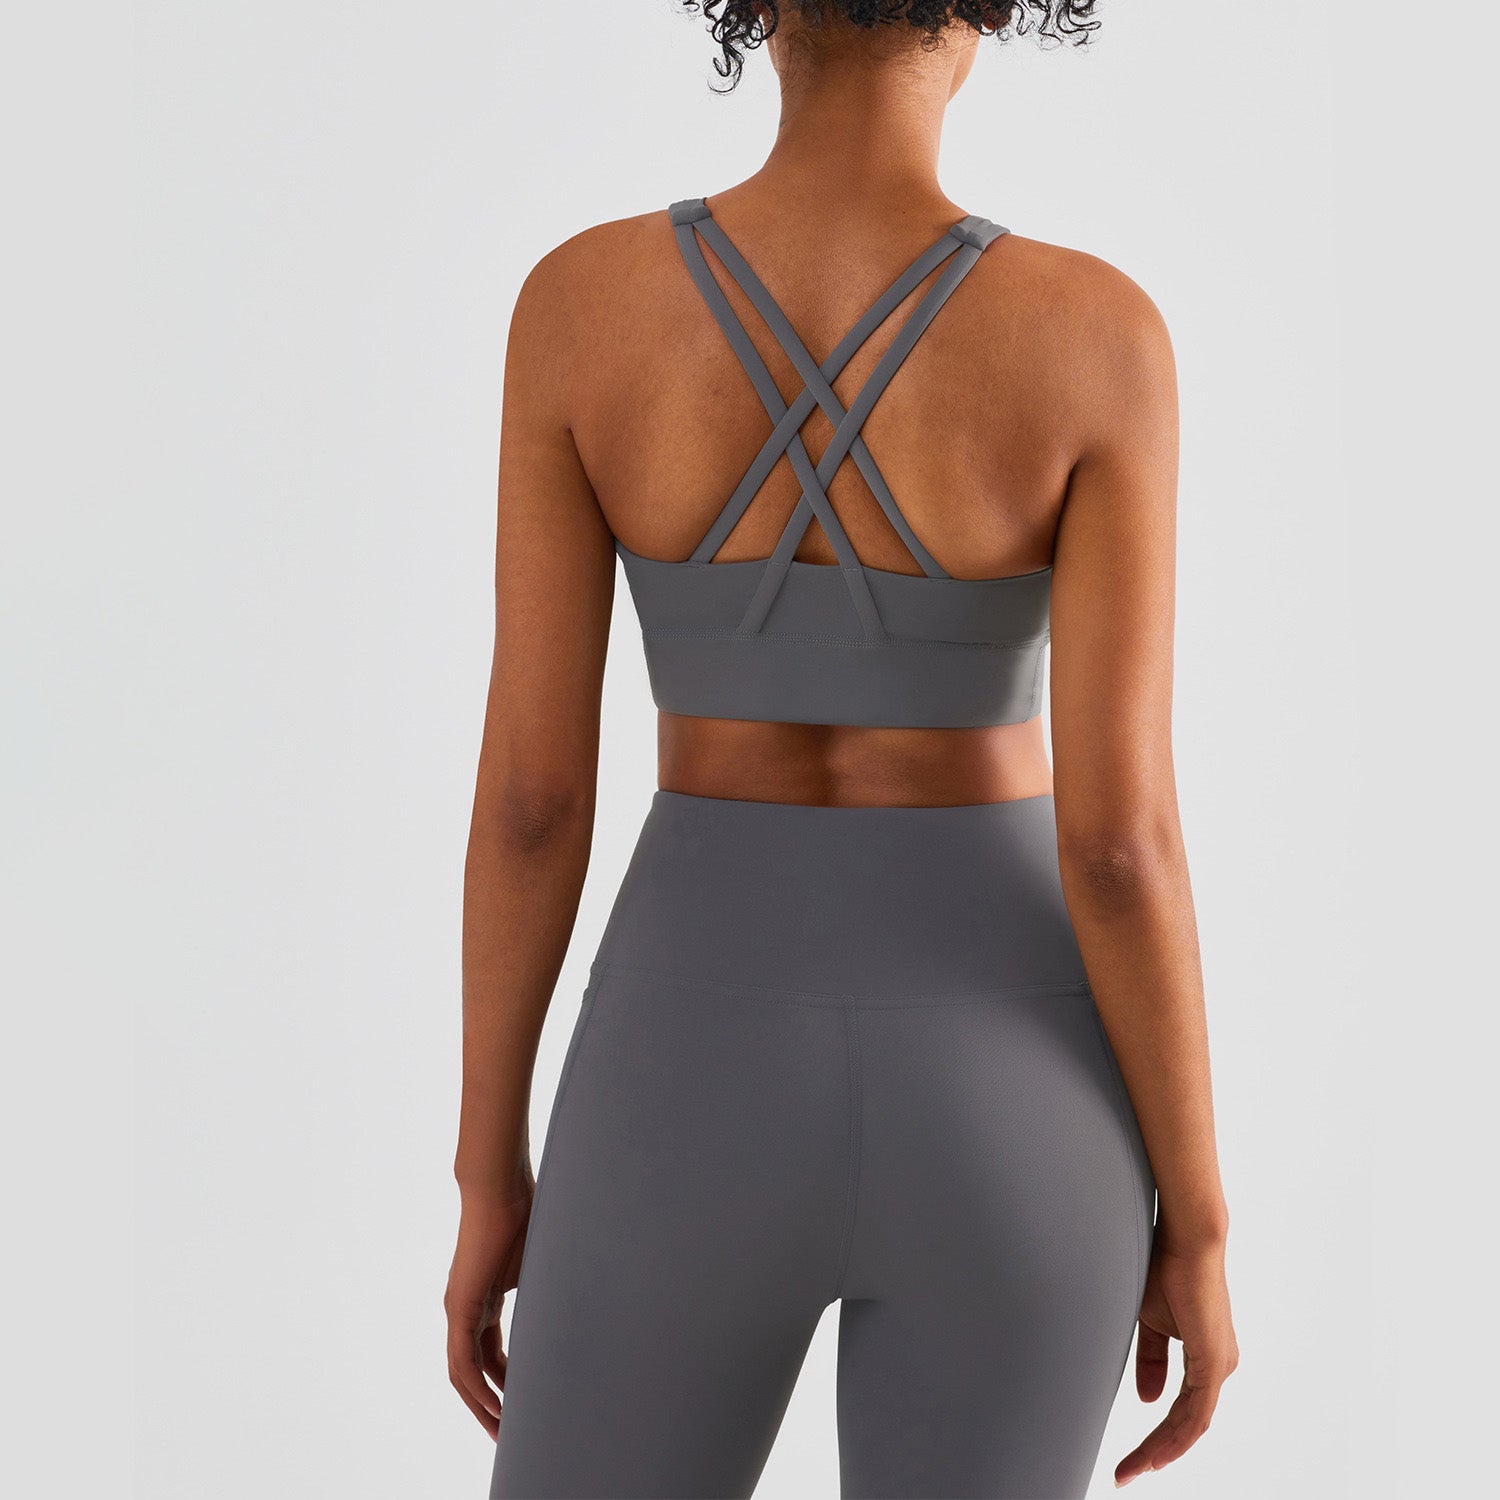 Women's Sports Bra Seamless Front Cross Side Button Lace Yoga Underwear  Bras TBN 